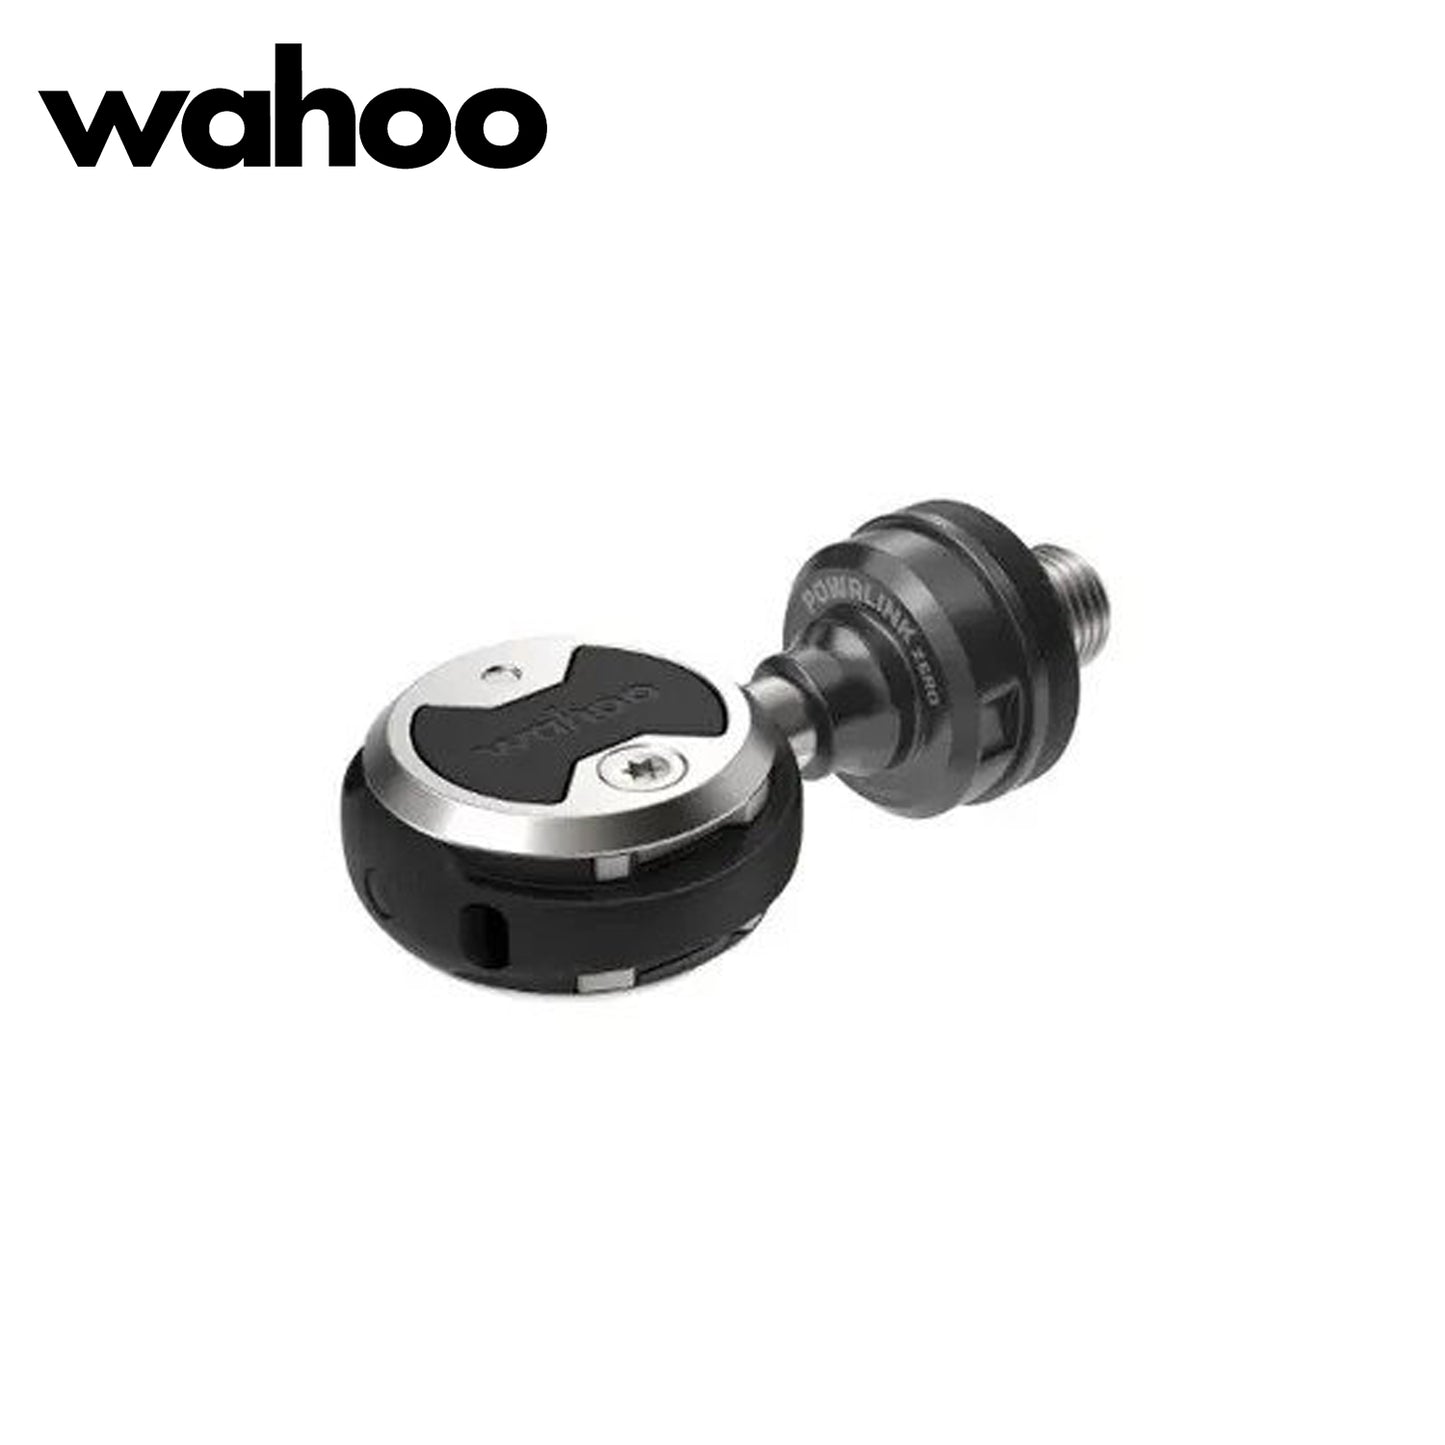 Wahoo POWRLINK Zero Single-Sided Bike Power Pedals